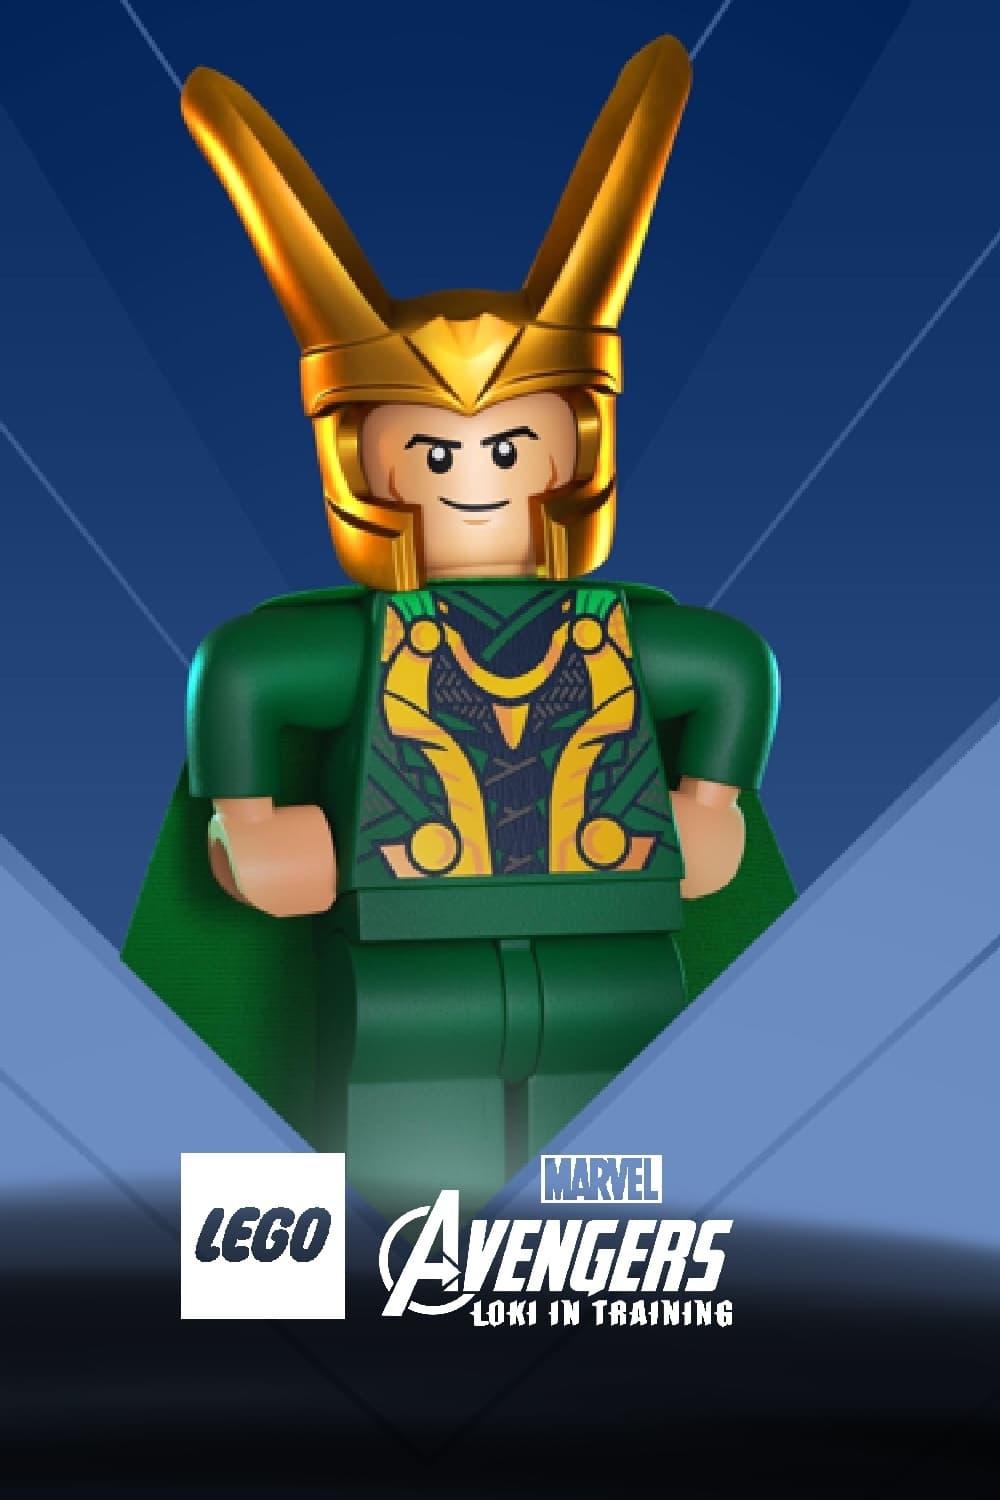 LEGO Marvel Avengers: Loki in Training poster